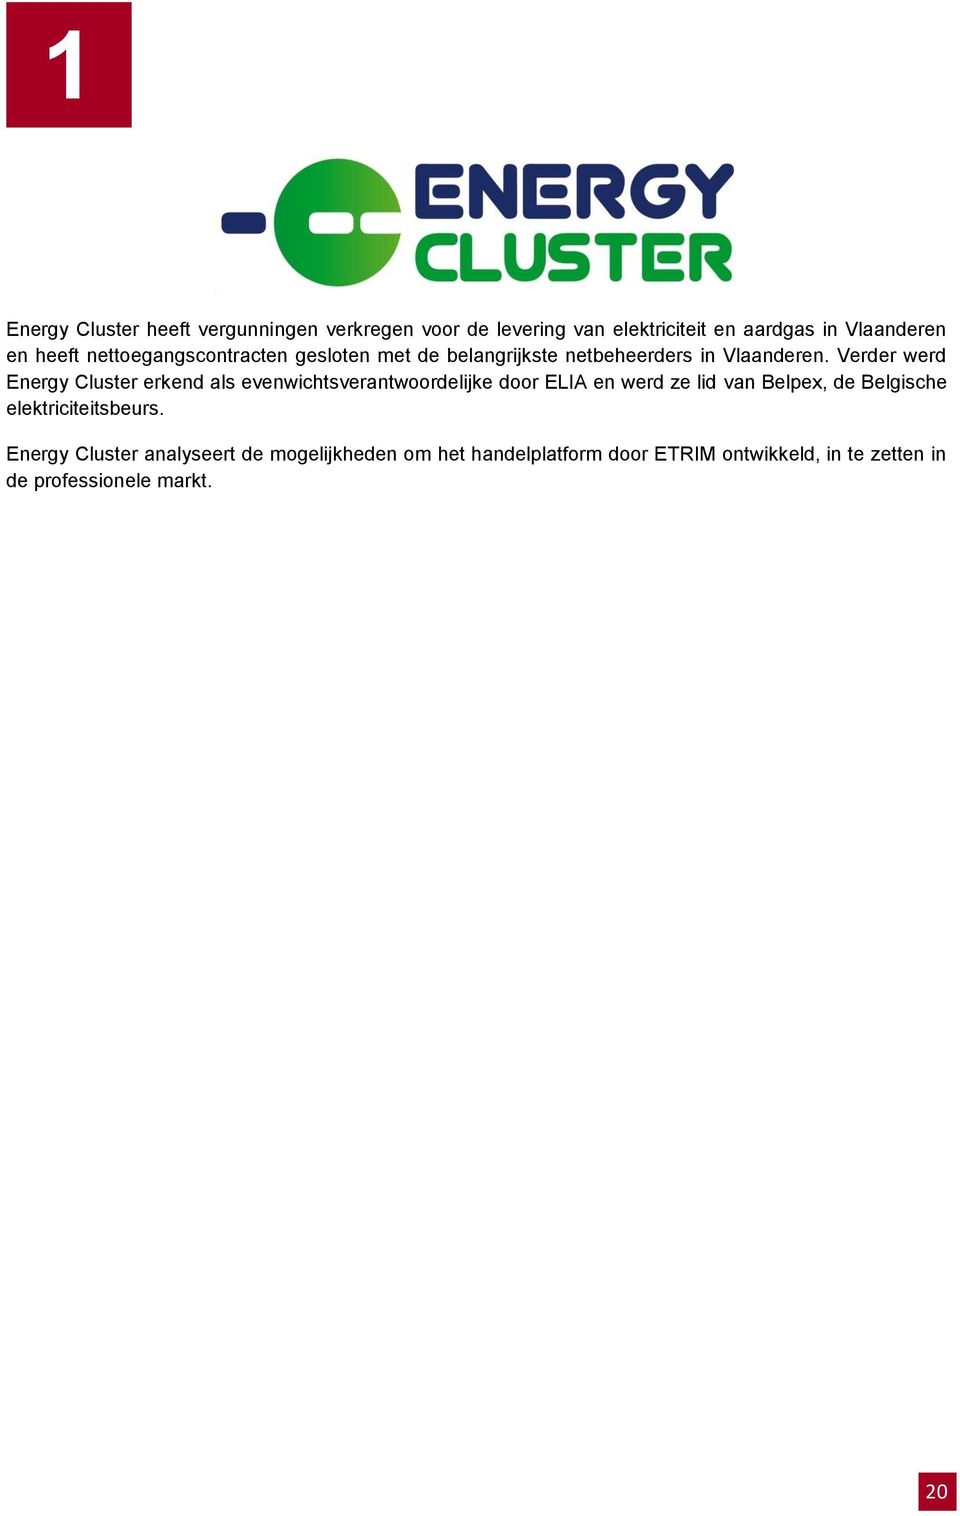 Verder werd Energy Cluster erkend als evenwichtsverantwoordelijke door ELIA en werd ze lid van Belpex, de Belgische